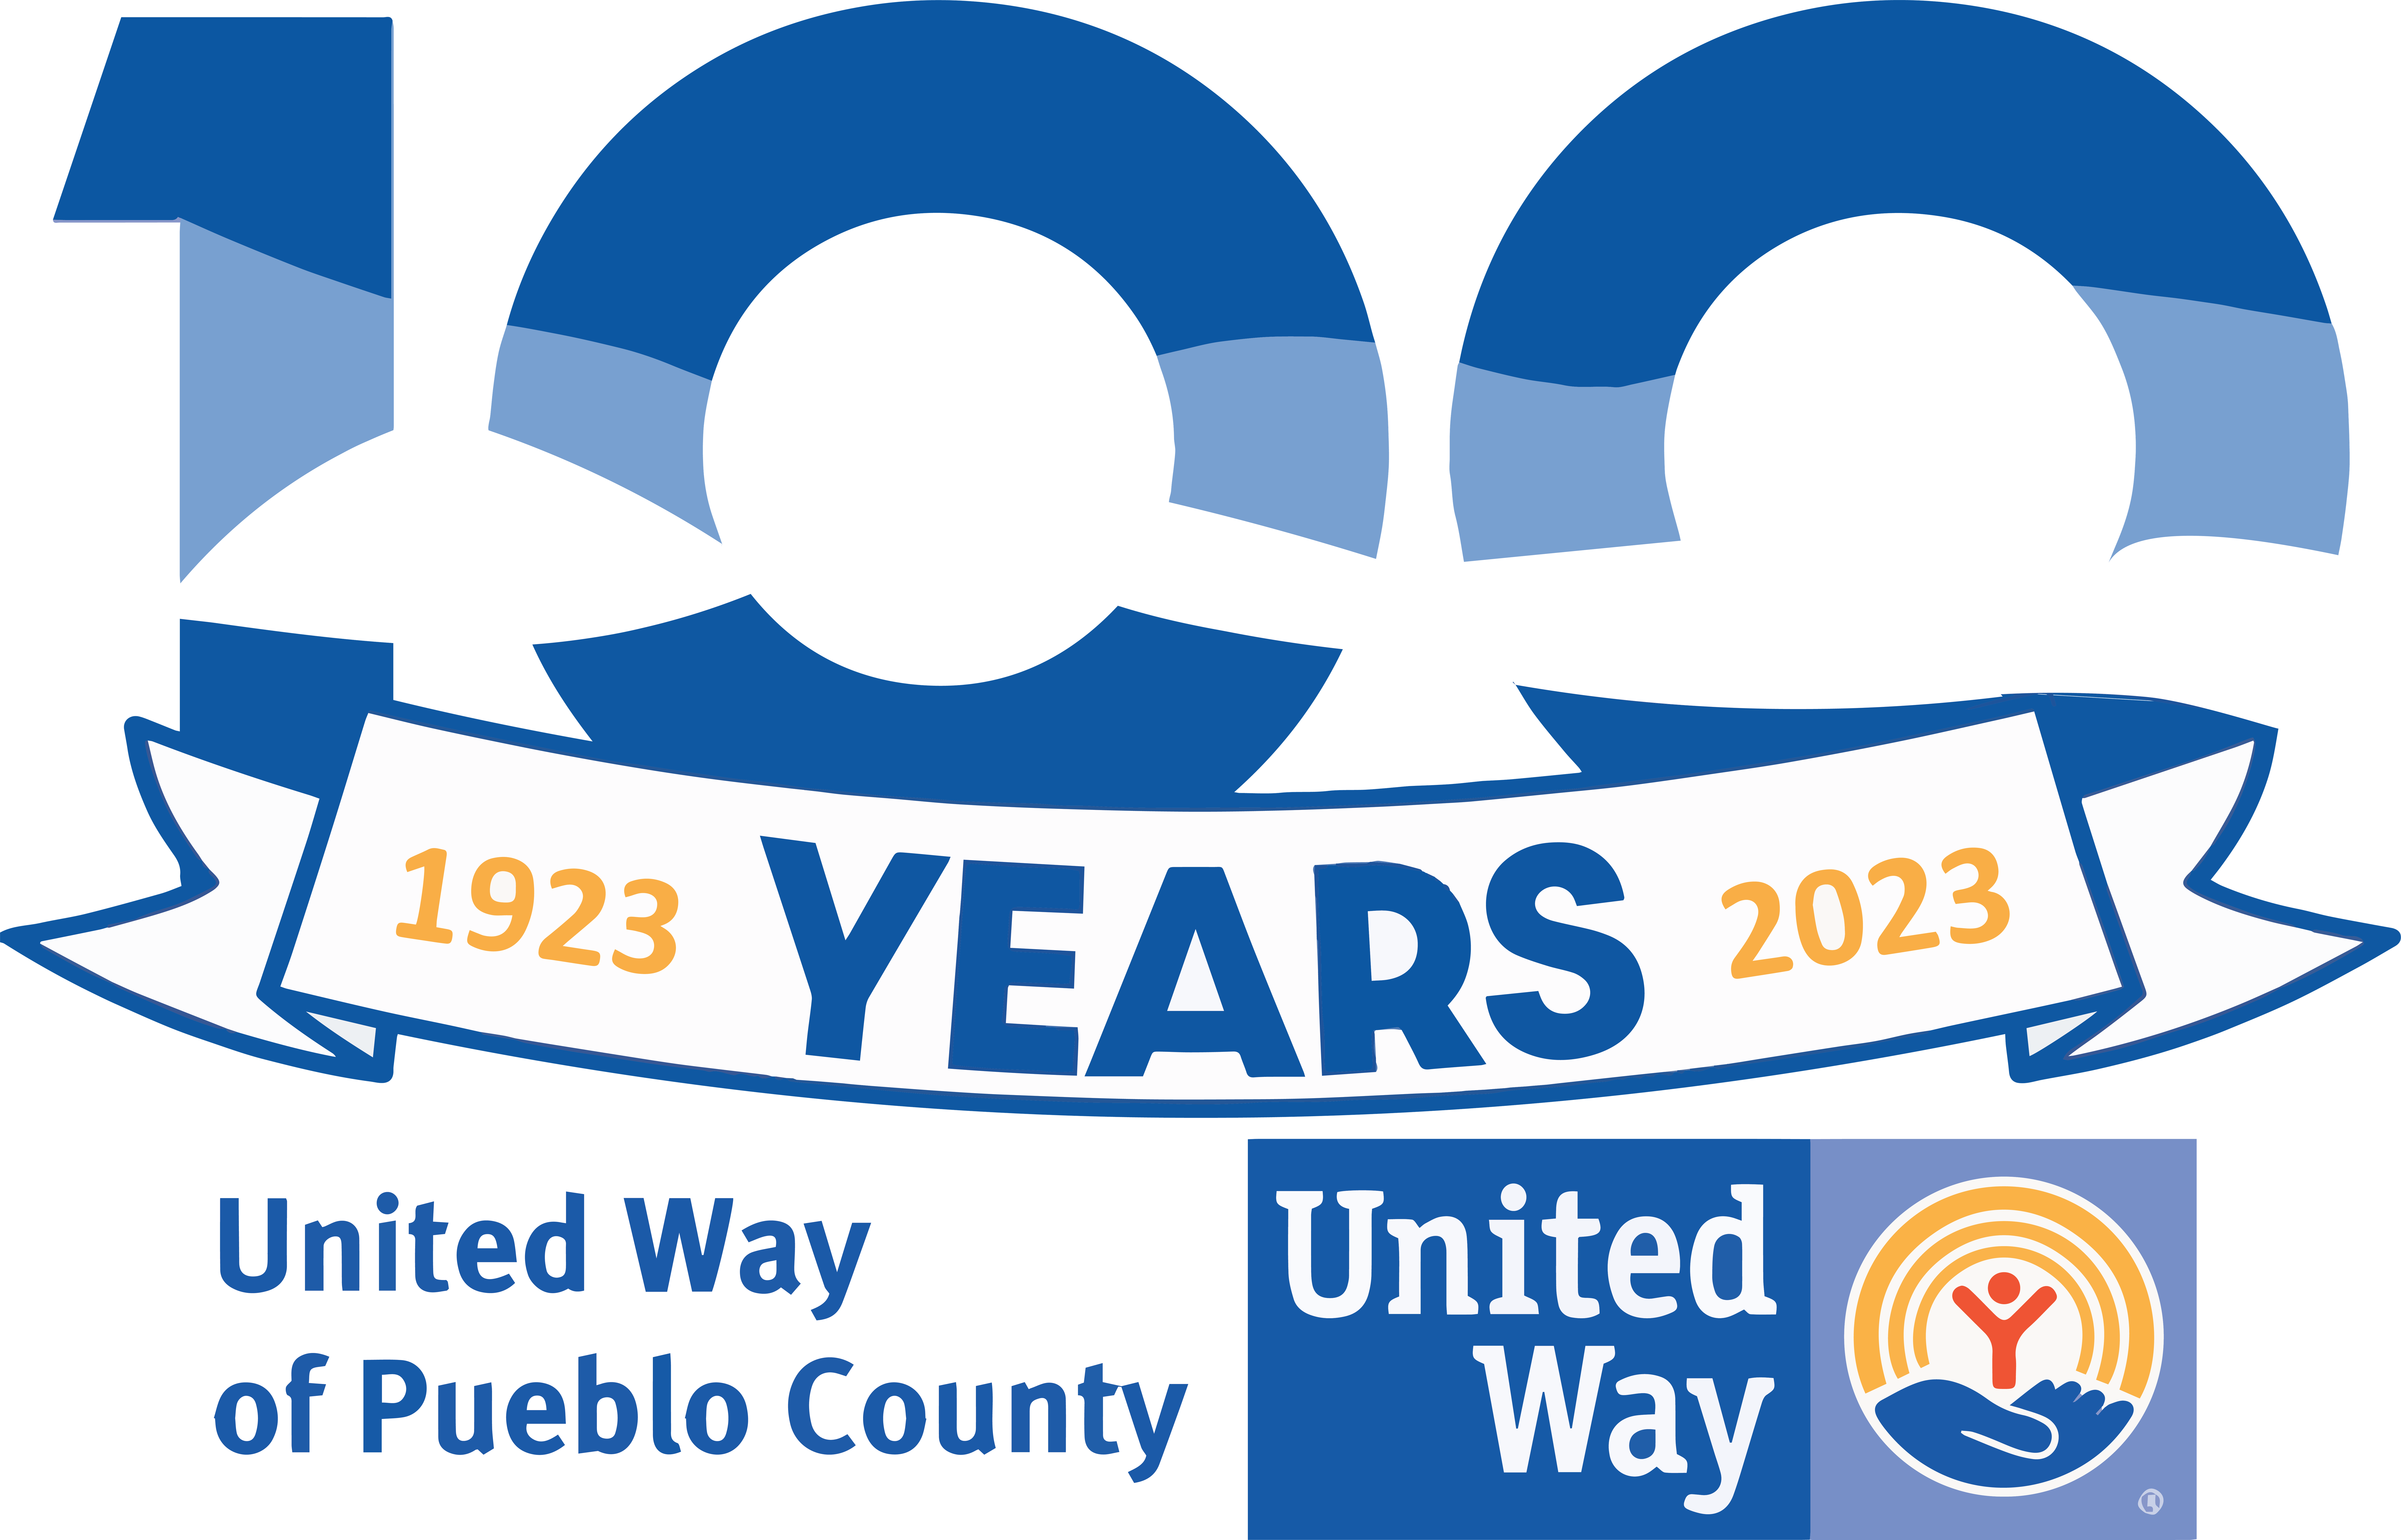 United Way of Pueblo County